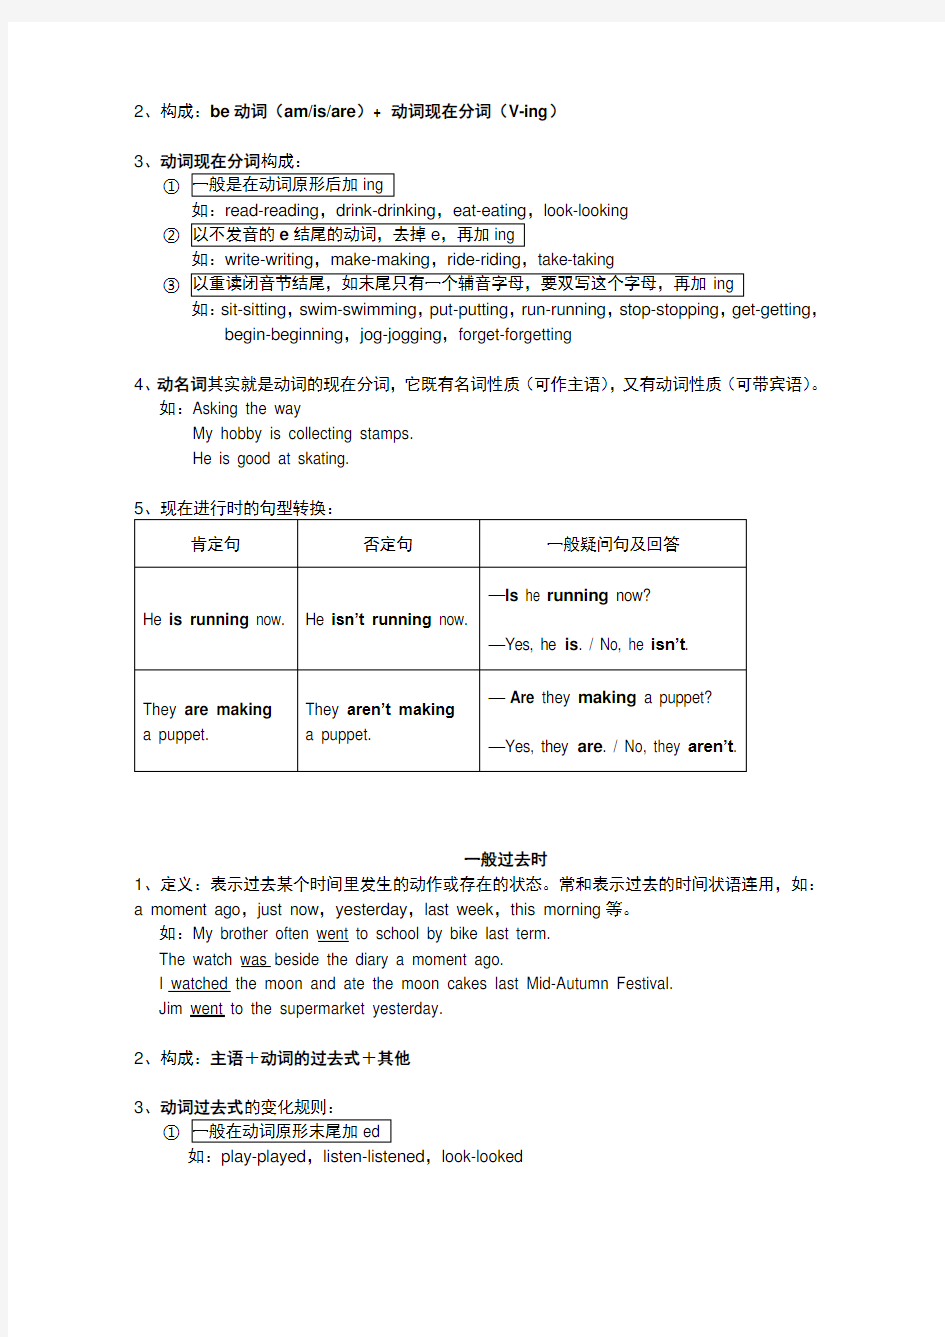 (完整)上海牛津小学英语语法知识总结,推荐文档